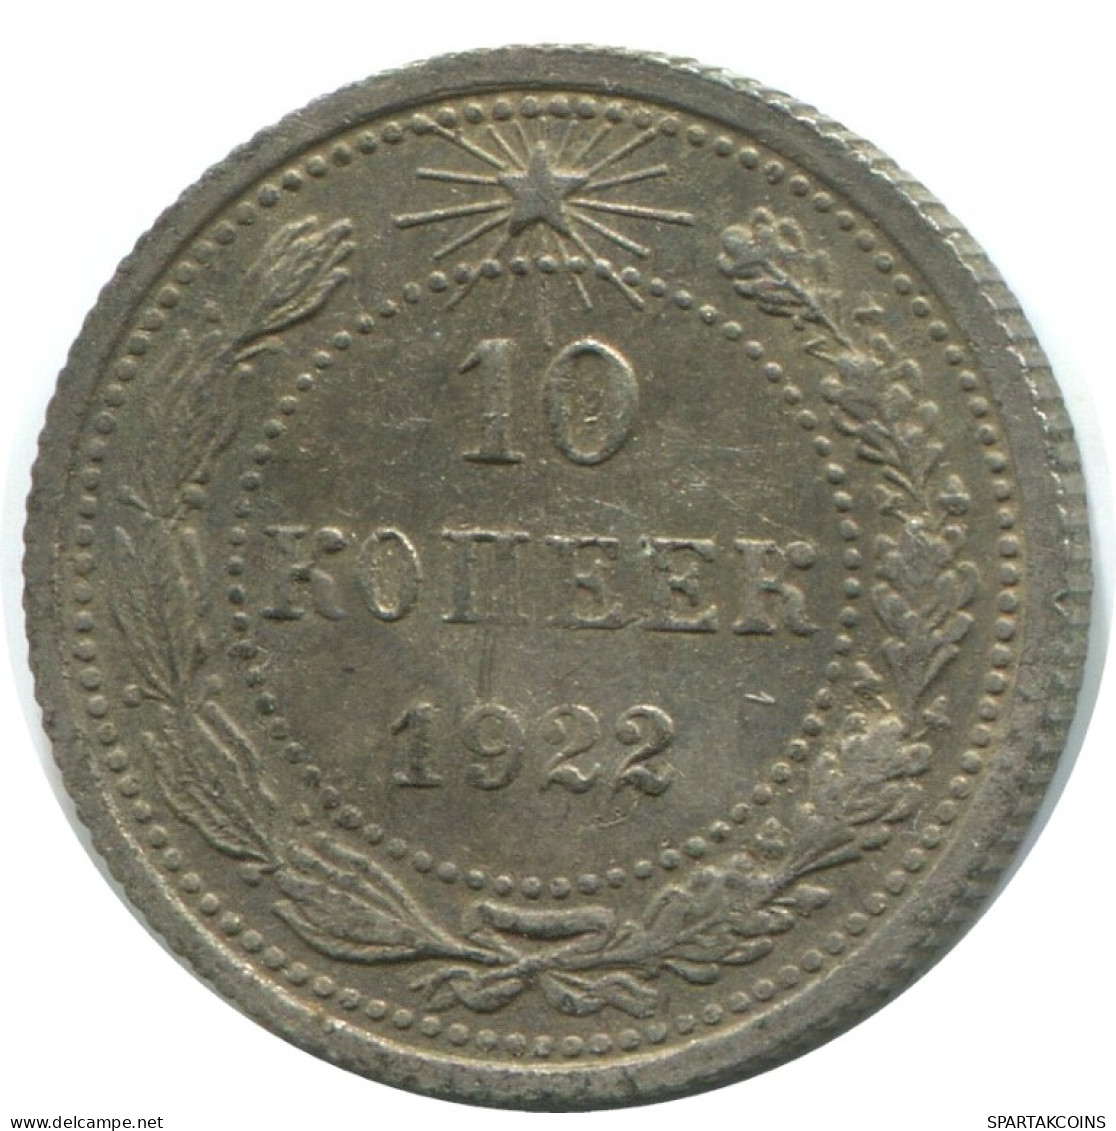 10 KOPEKS 1923 RUSSLAND RUSSIA RSFSR SILBER Münze HIGH GRADE #AE864.4.D.A - Russland